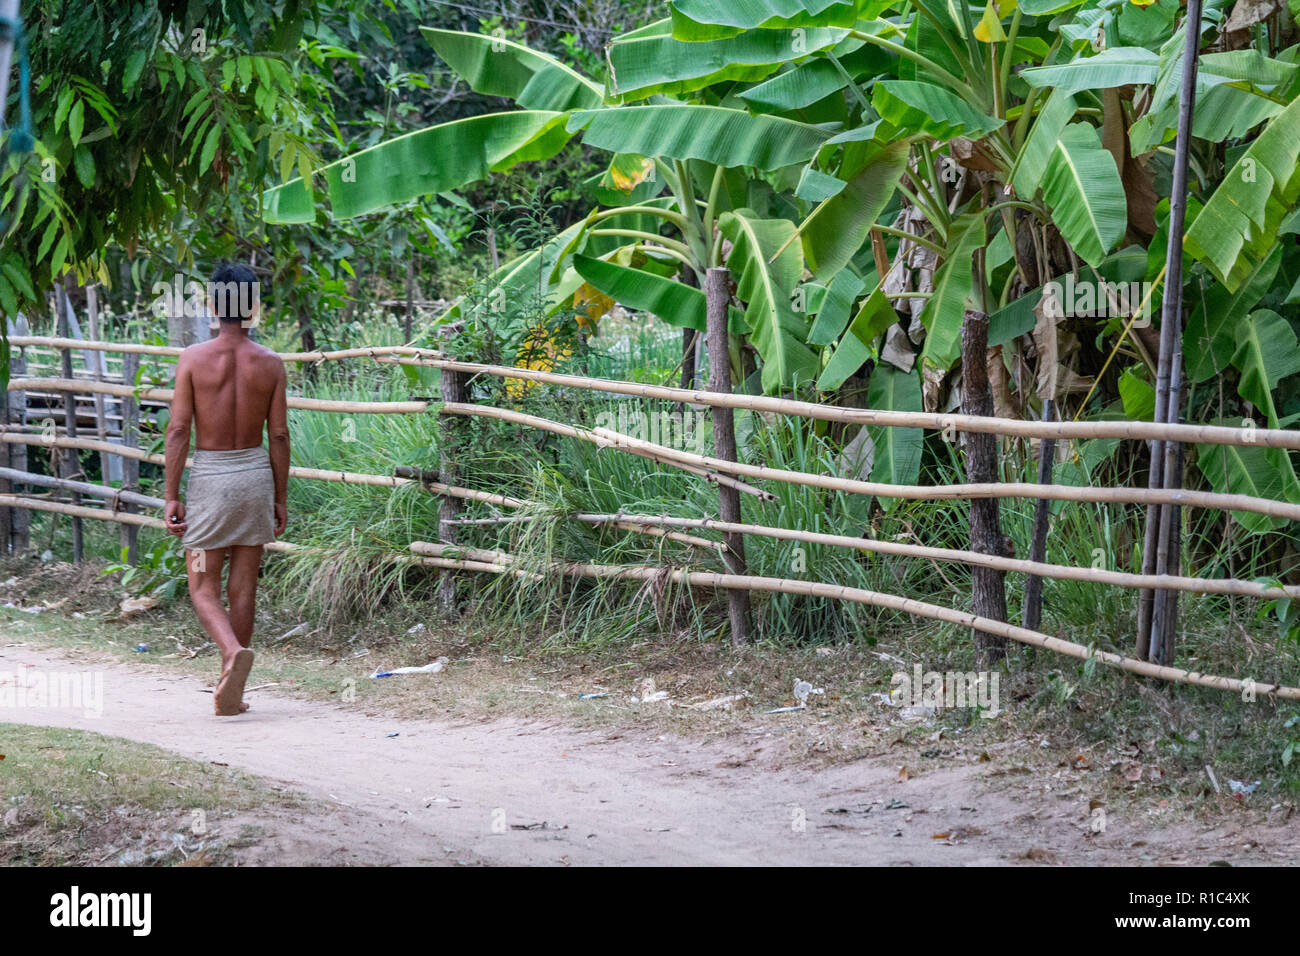 Don Det, Laos - Aprile 23, 2018: a piedi nudi uomo locale a piedi attraverso un sentiero di Don Det villaggio vicino al confine con la Cambogia Foto Stock